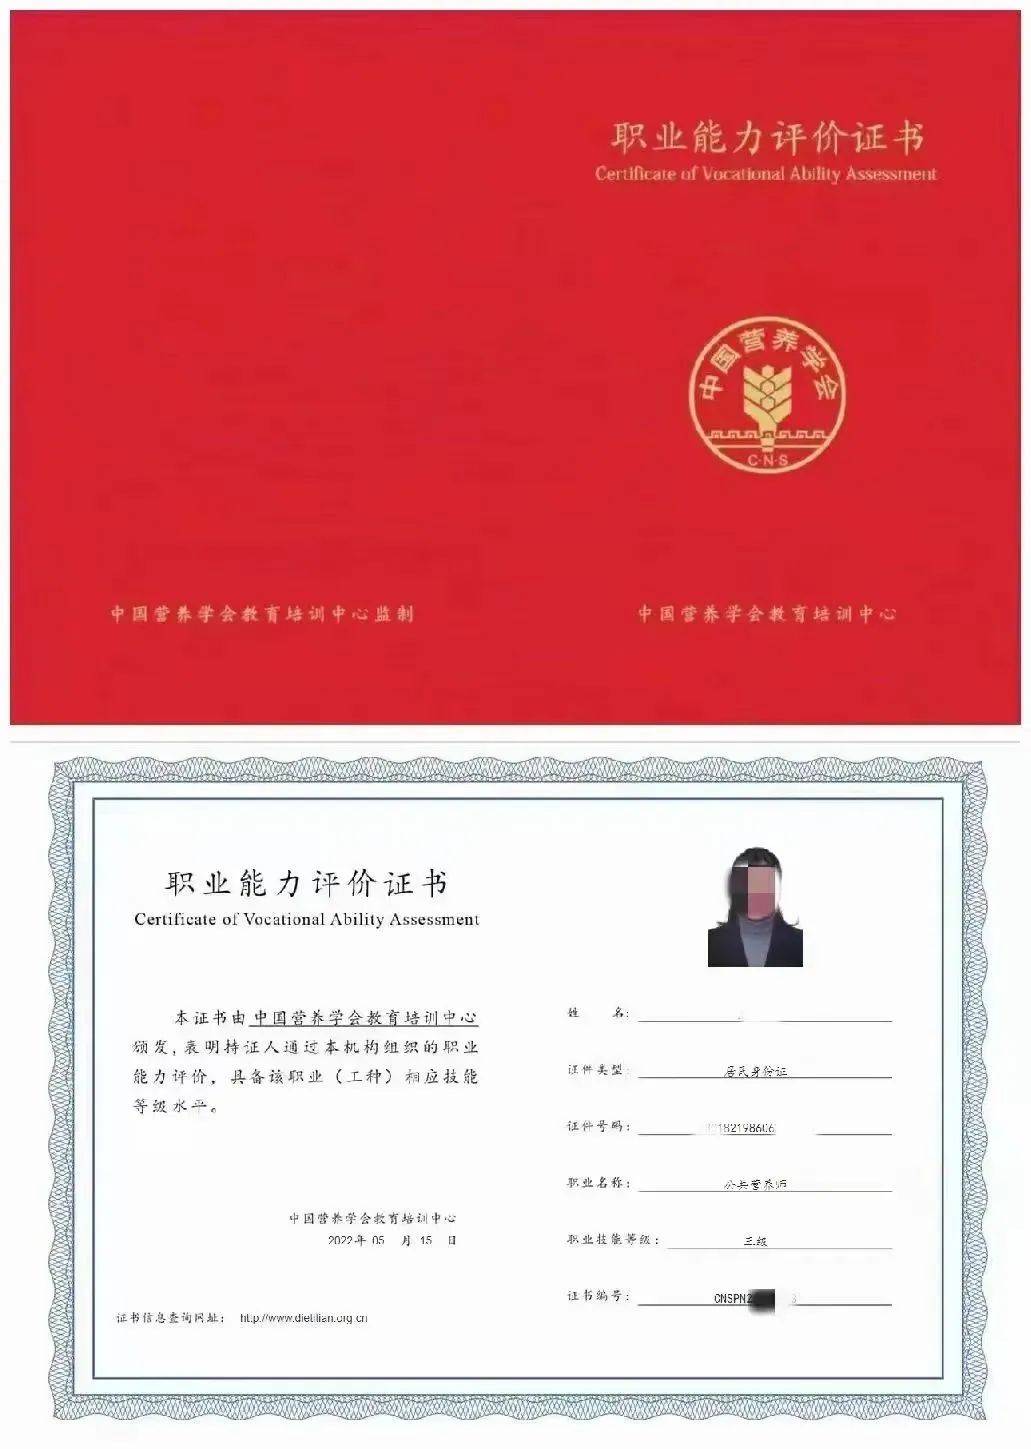 中国营养学会教育培训中心公共营养师职业能力评价证书样本报名对象1